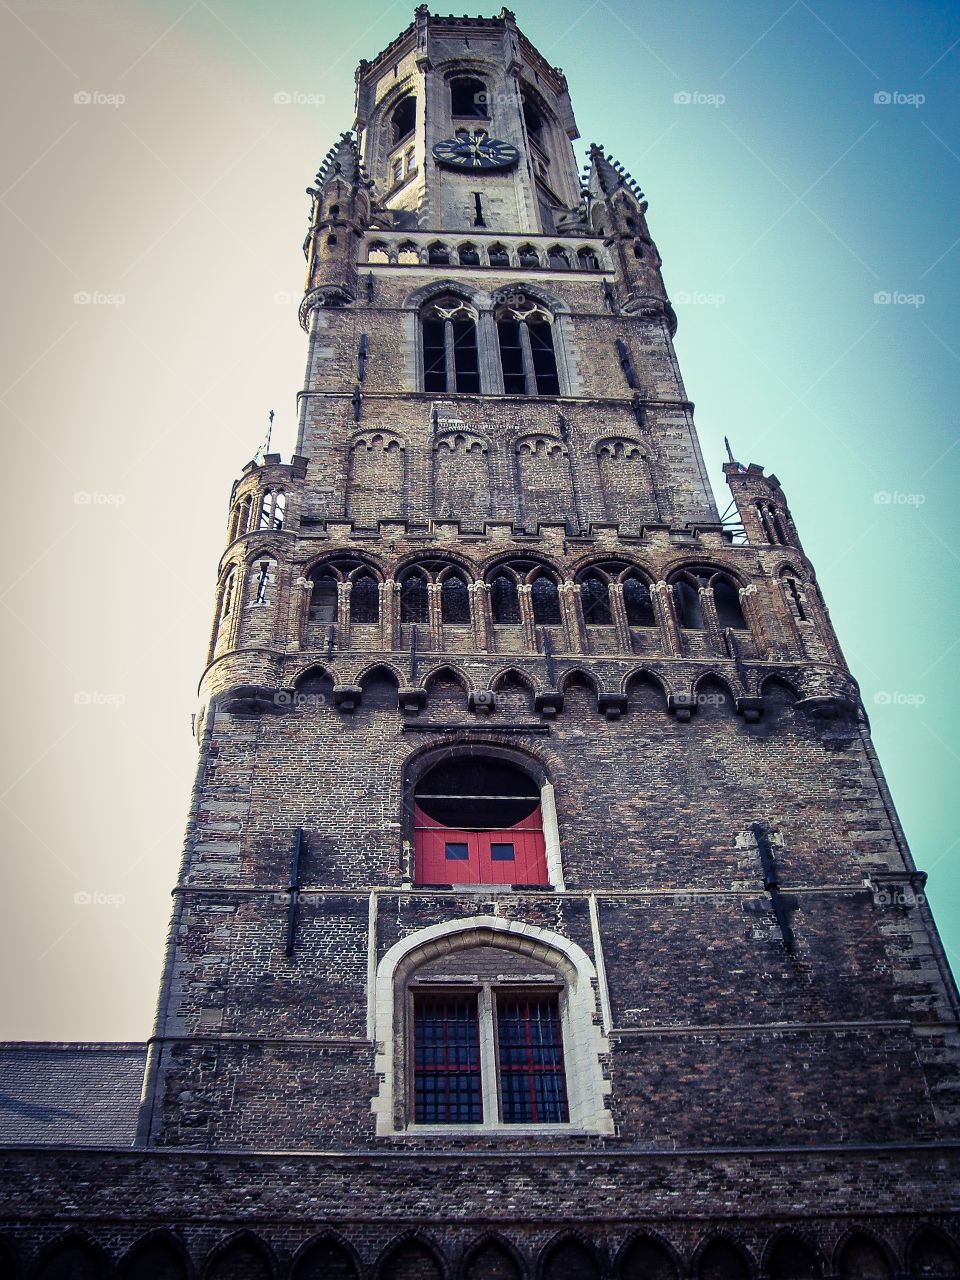 Torre Campanario de Brujas Belfort (Brugge - Belgium)